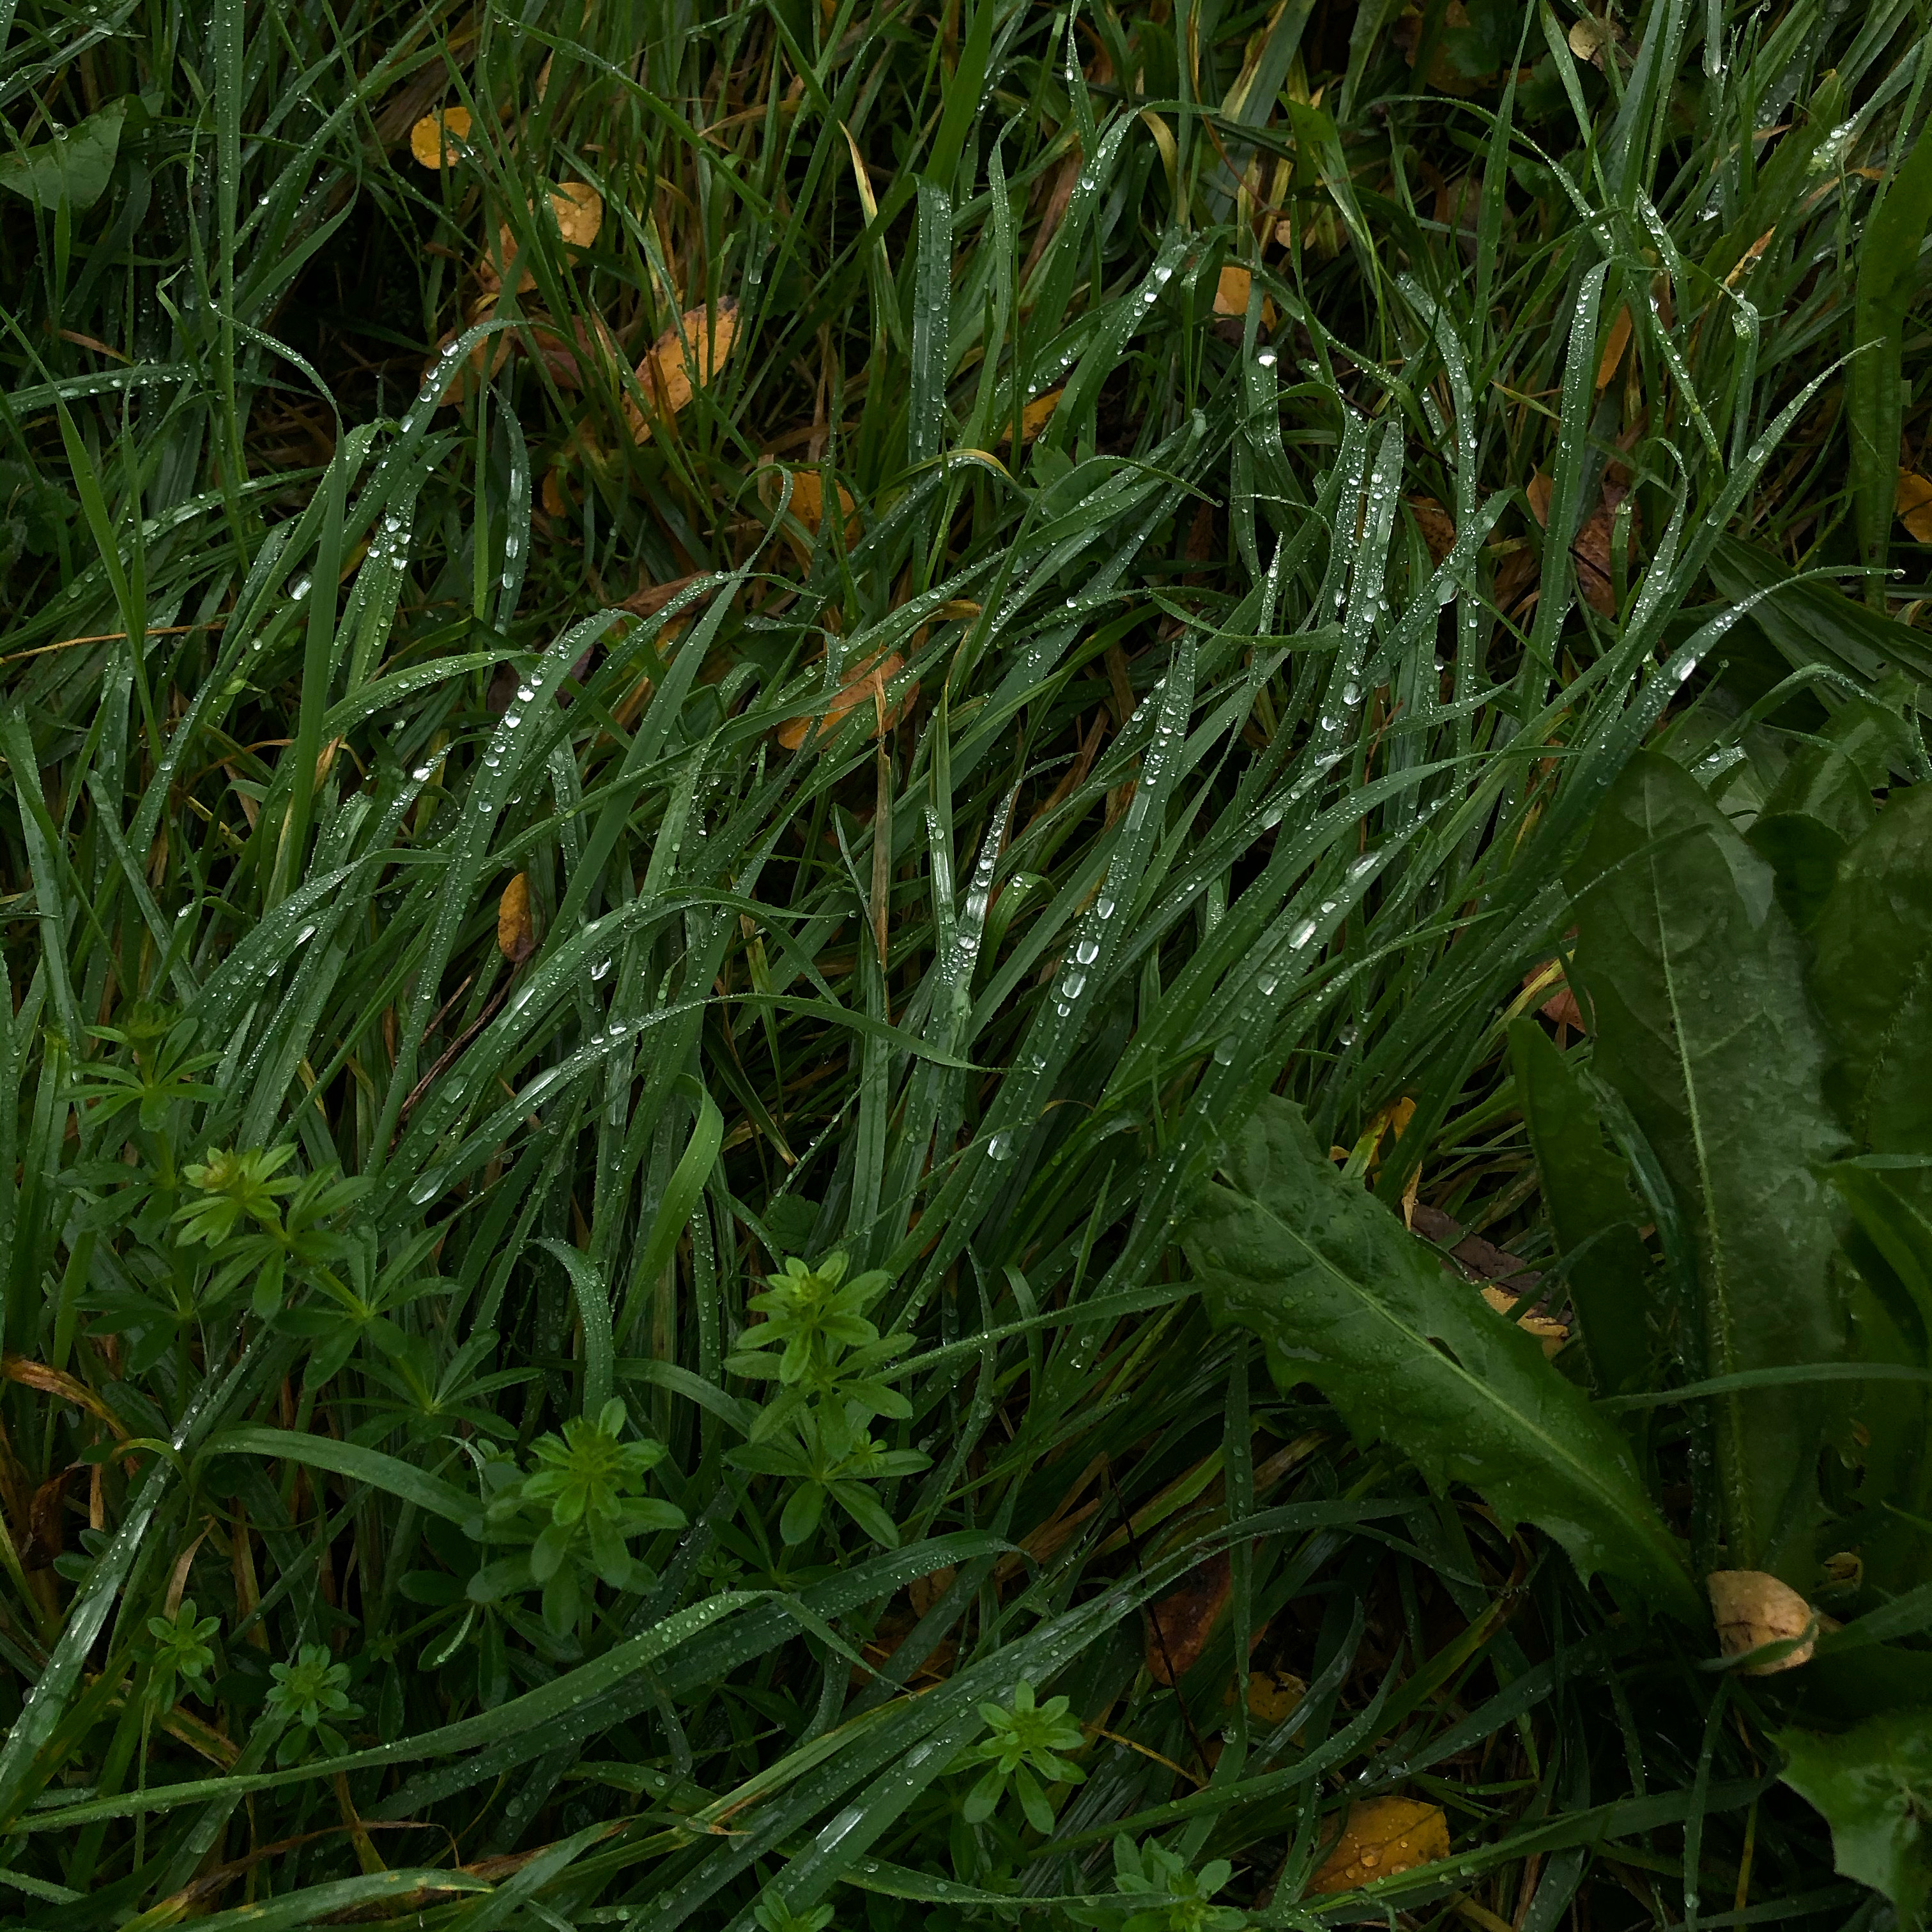 Autumn grass